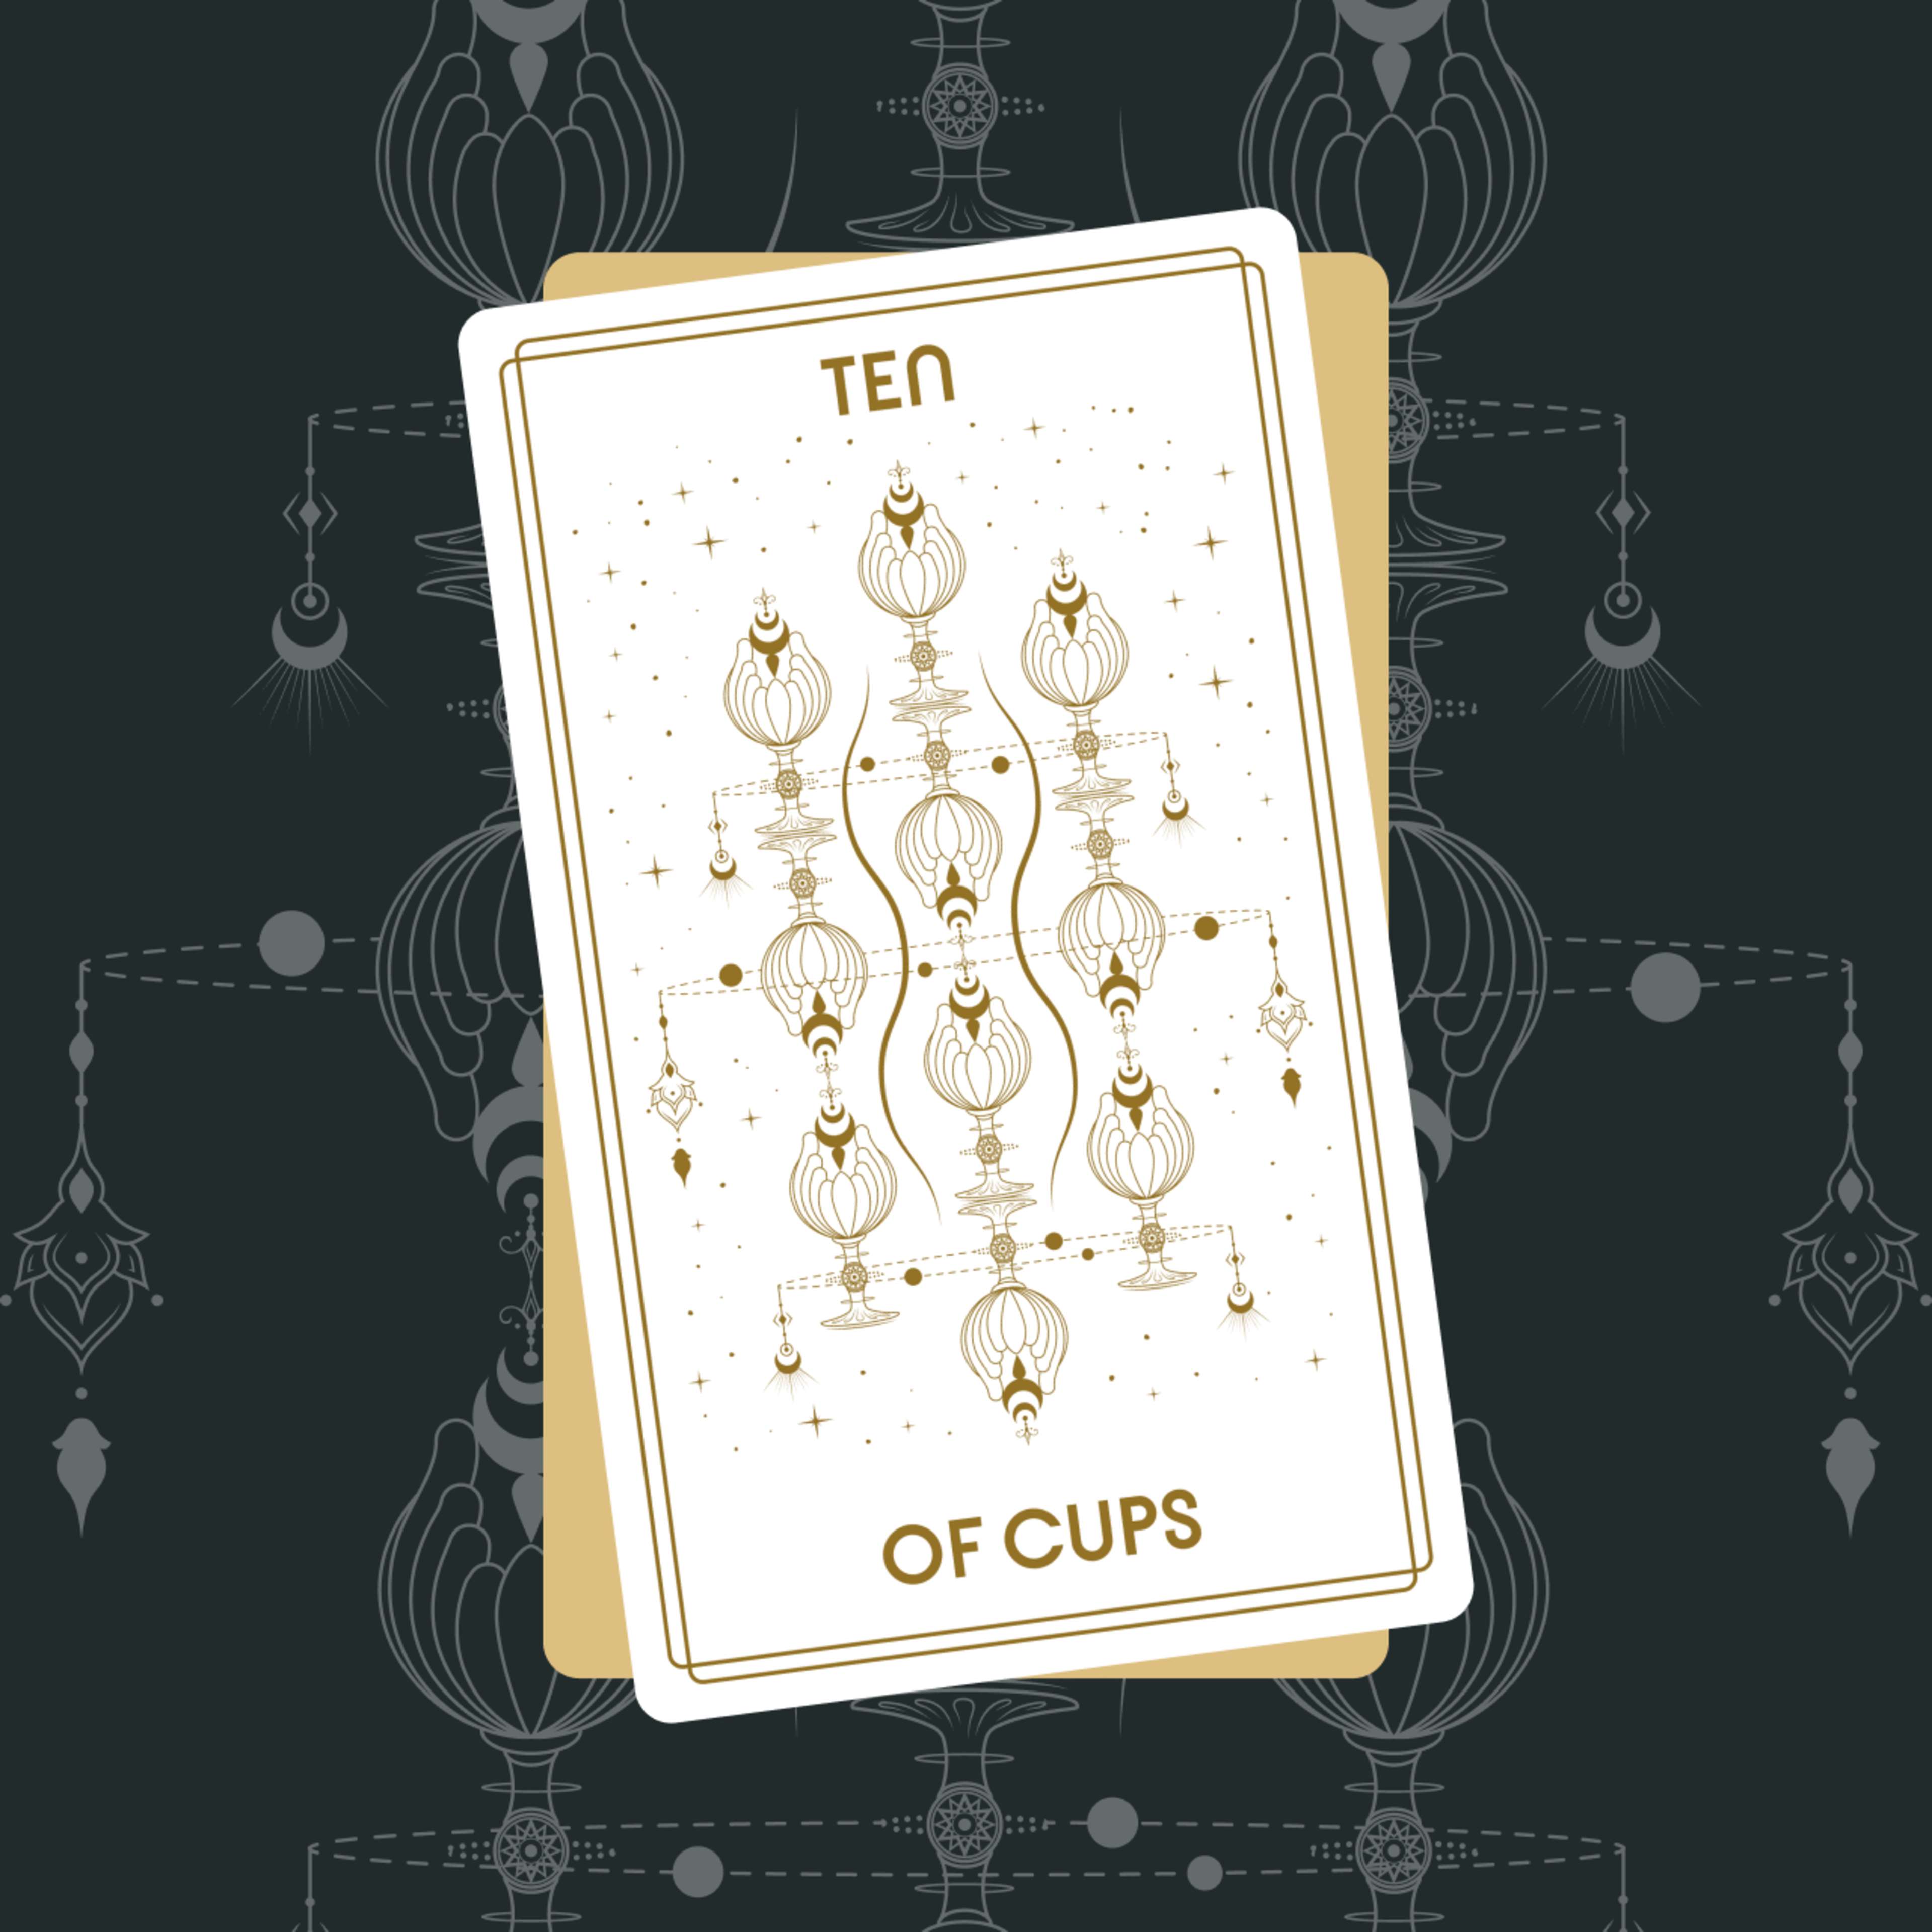 Ten of Cups Tarot Card